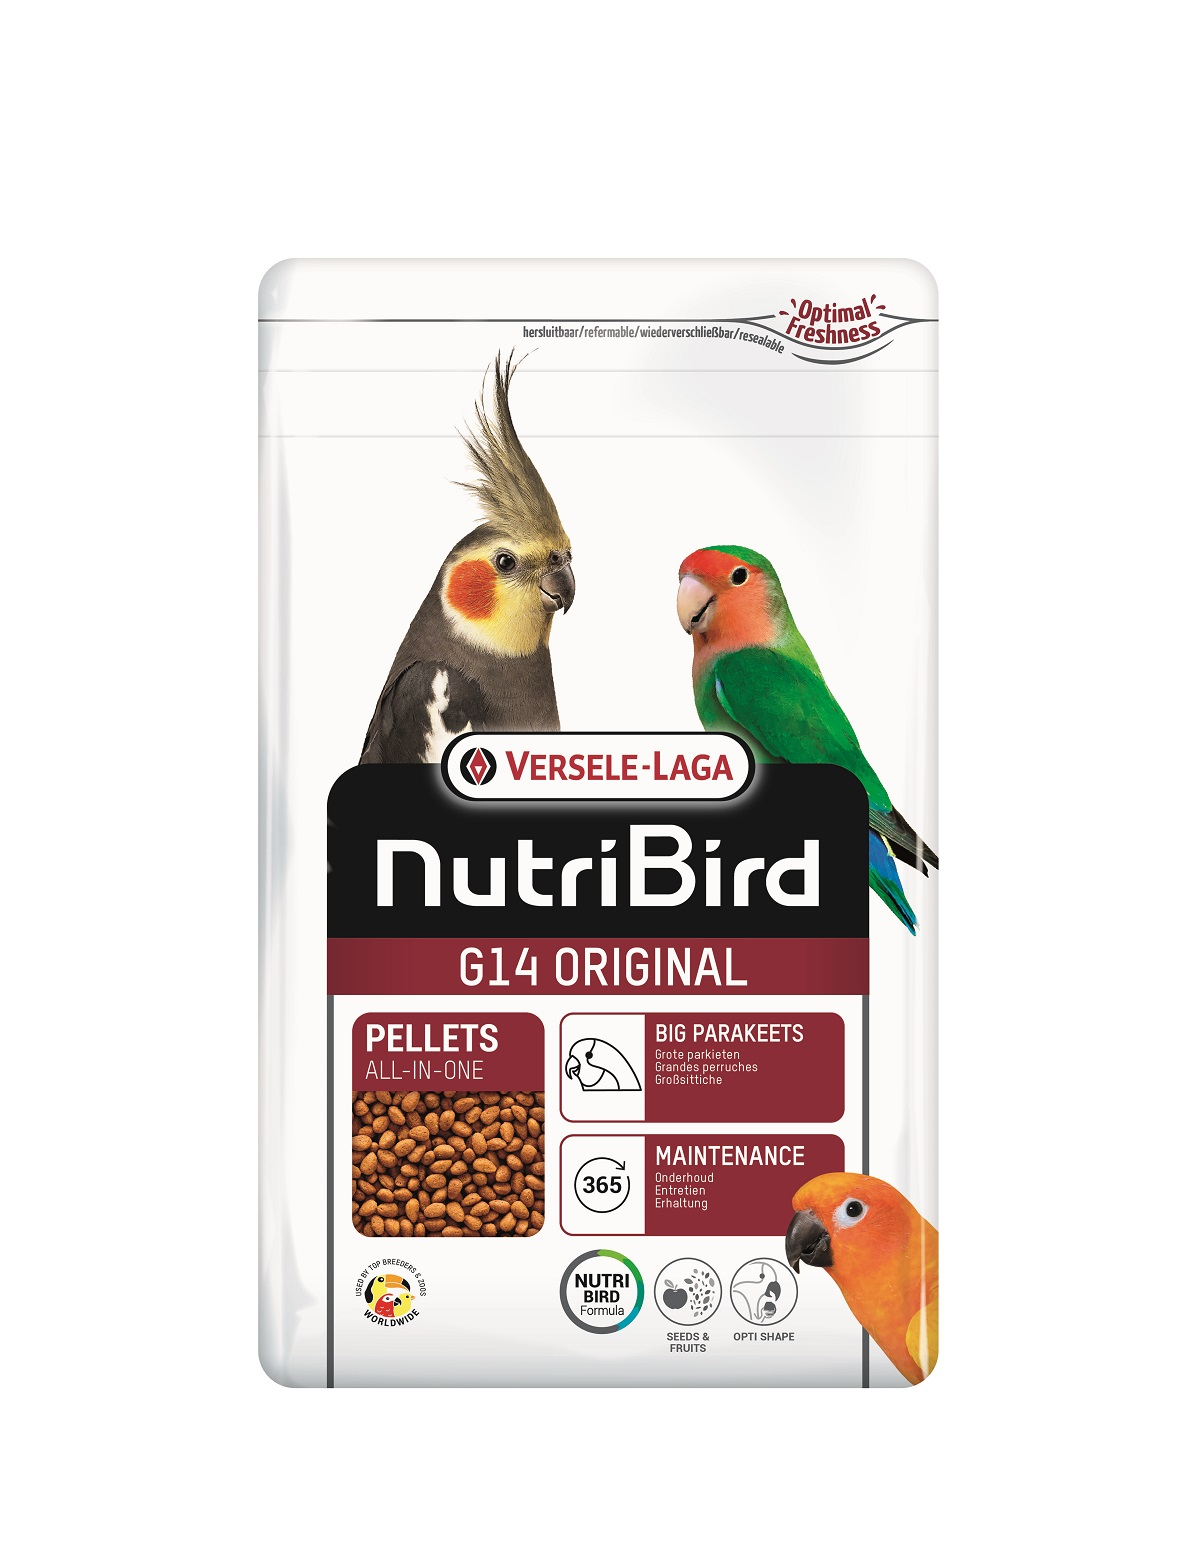 NutriBird G14 Original Alimento completo e equilibrado para periquitos grandes